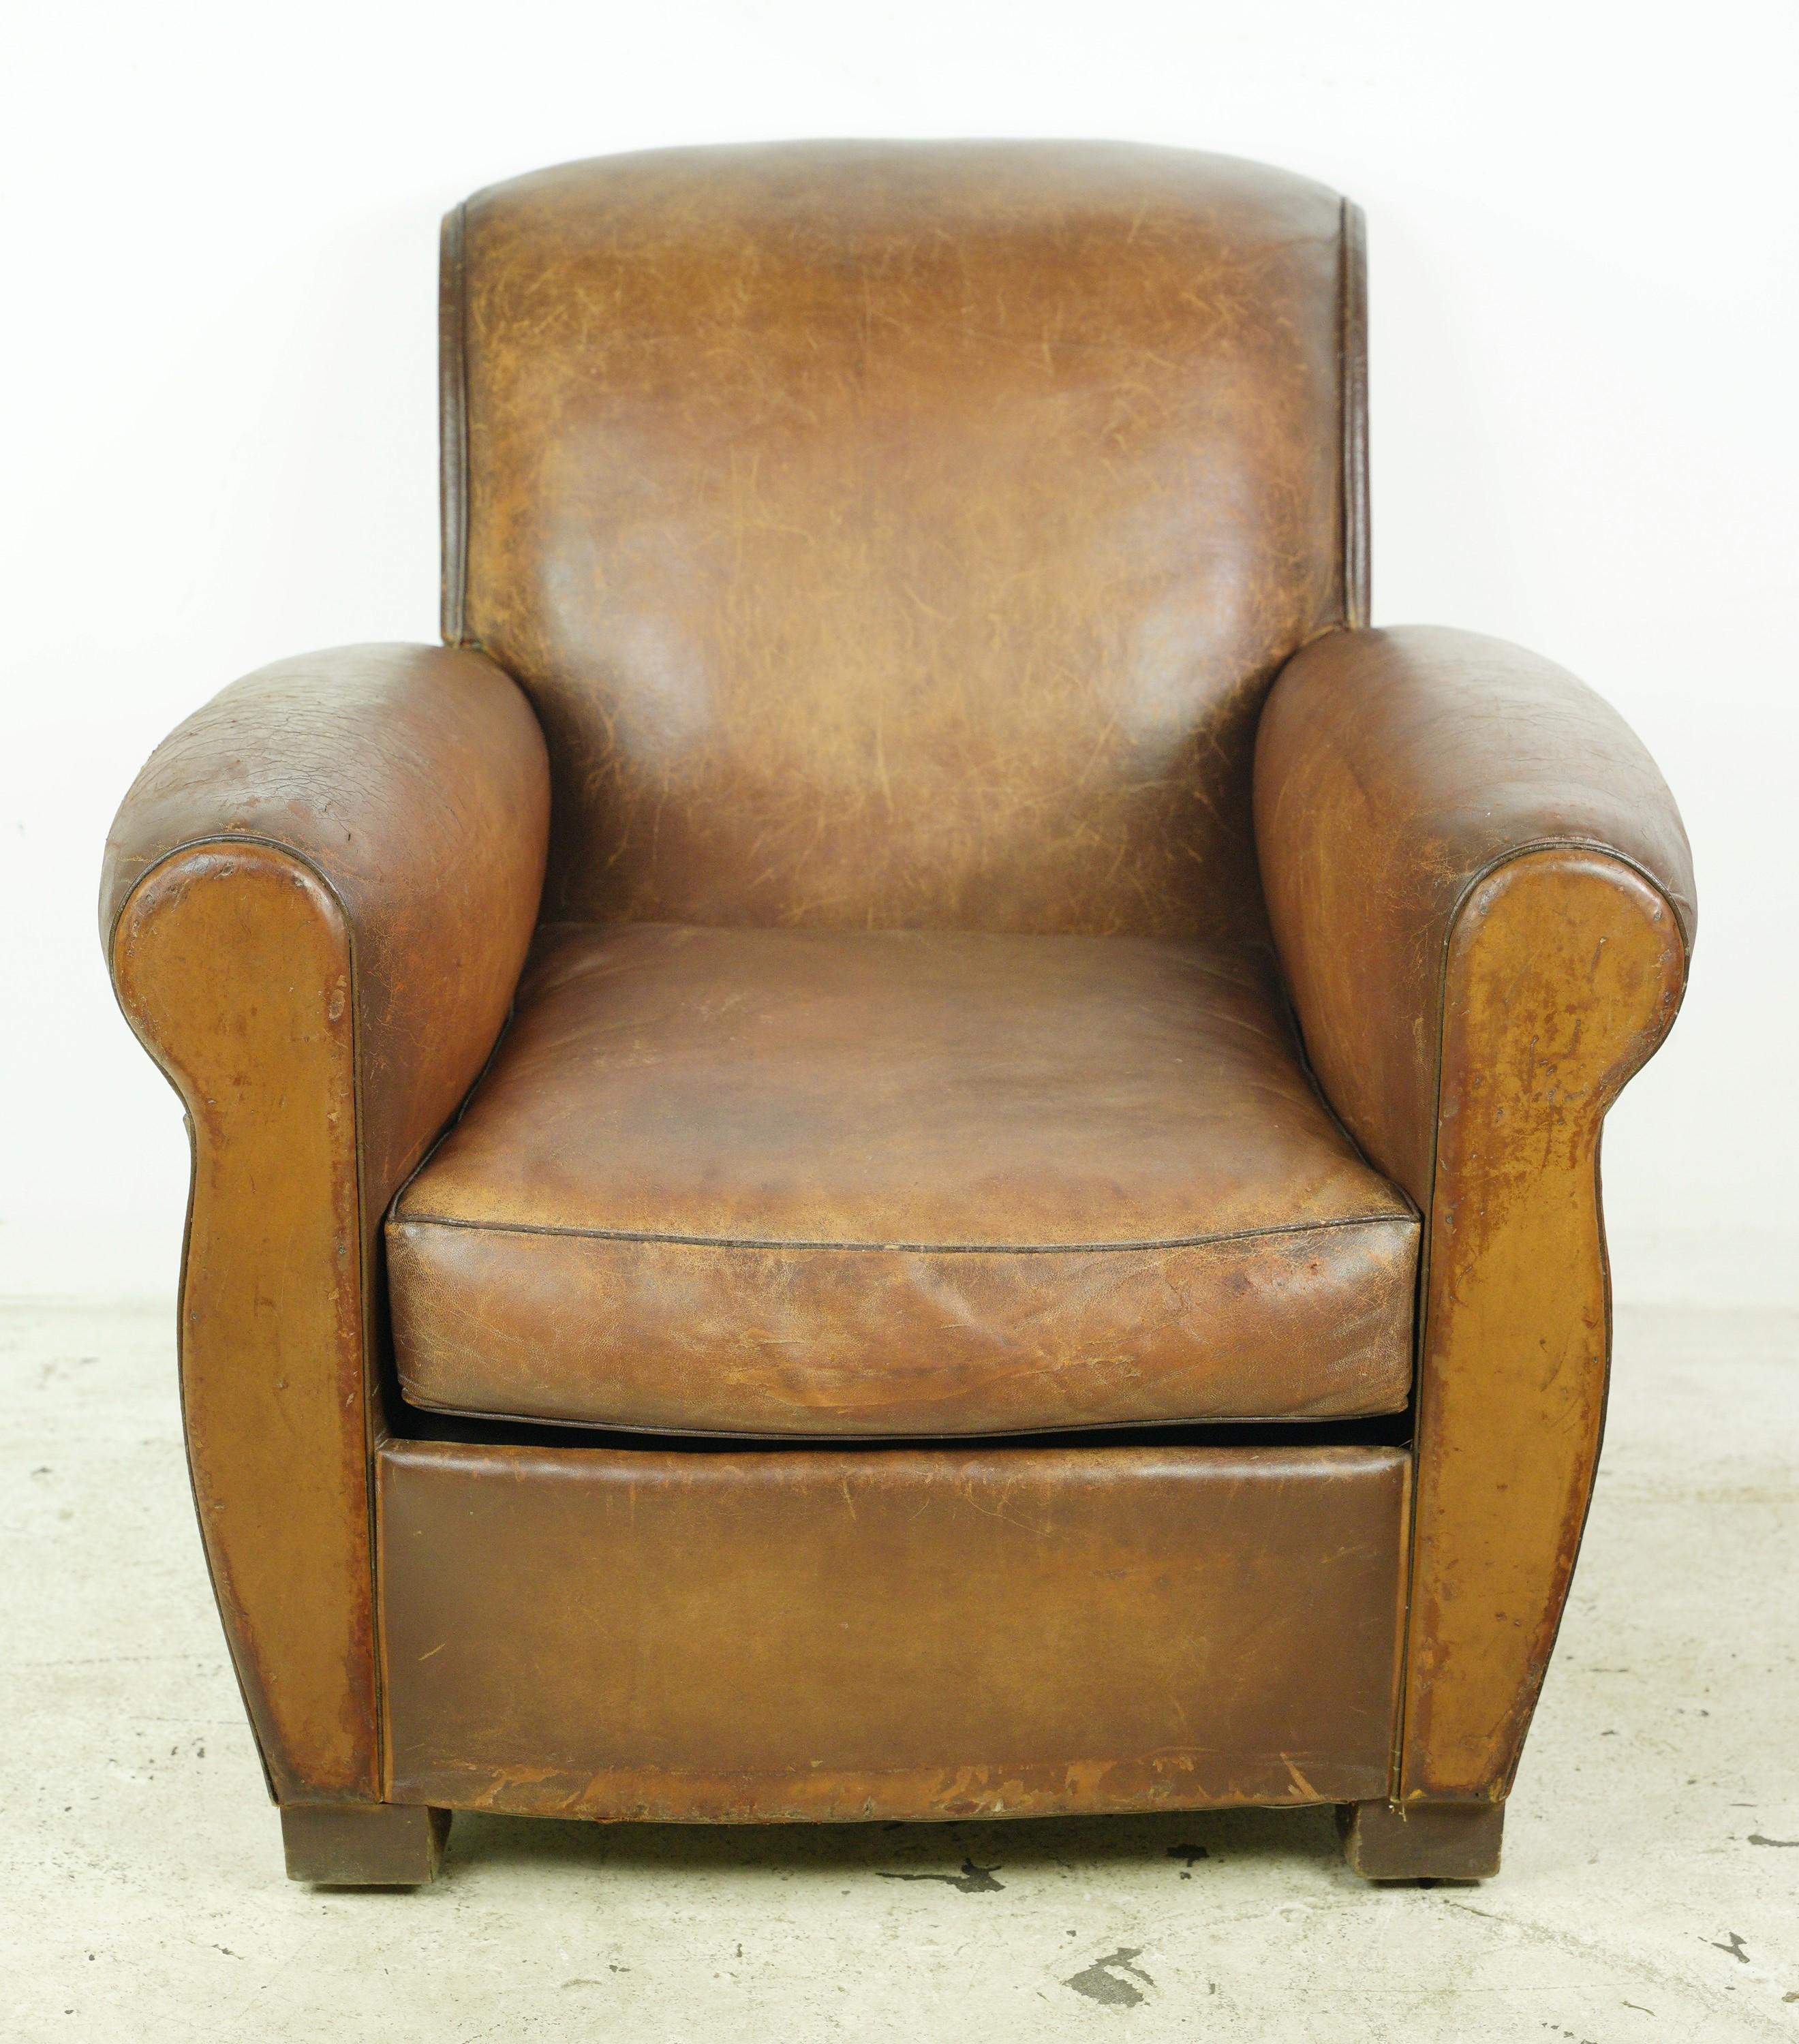 Ce fauteuil club européen tapissé de cuir marron est orné de clous en acier, avec des pieds en bois. Ce fauteuil allie le confort du cuir à l'attrait classique des montants en acier et des détails en bois, créant ainsi une option d'assise élégante